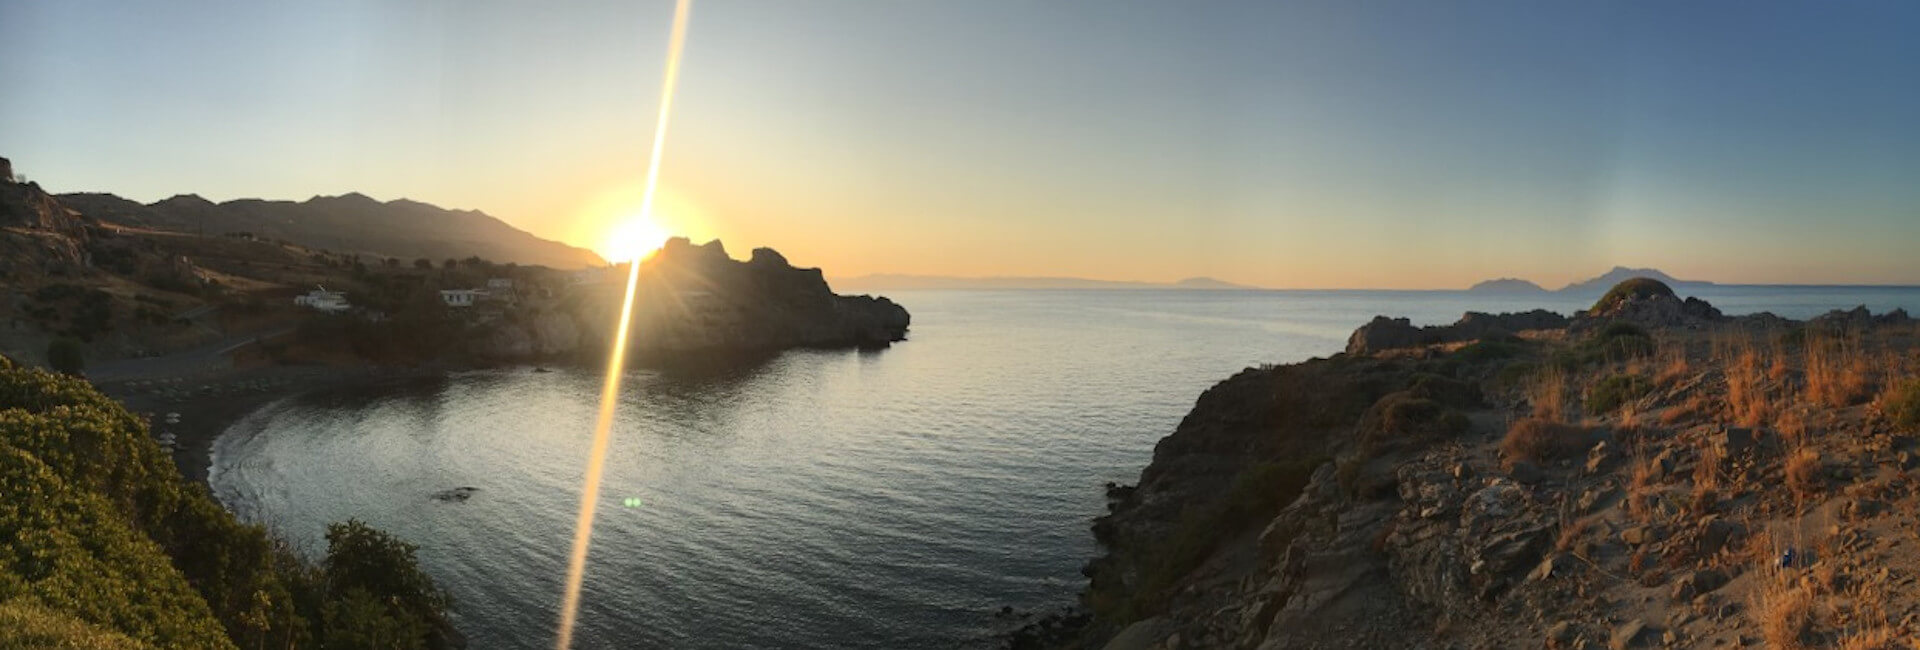 Dawn rising over Agios Pavlos bay with Yoga Rocks yoga holidays Greece